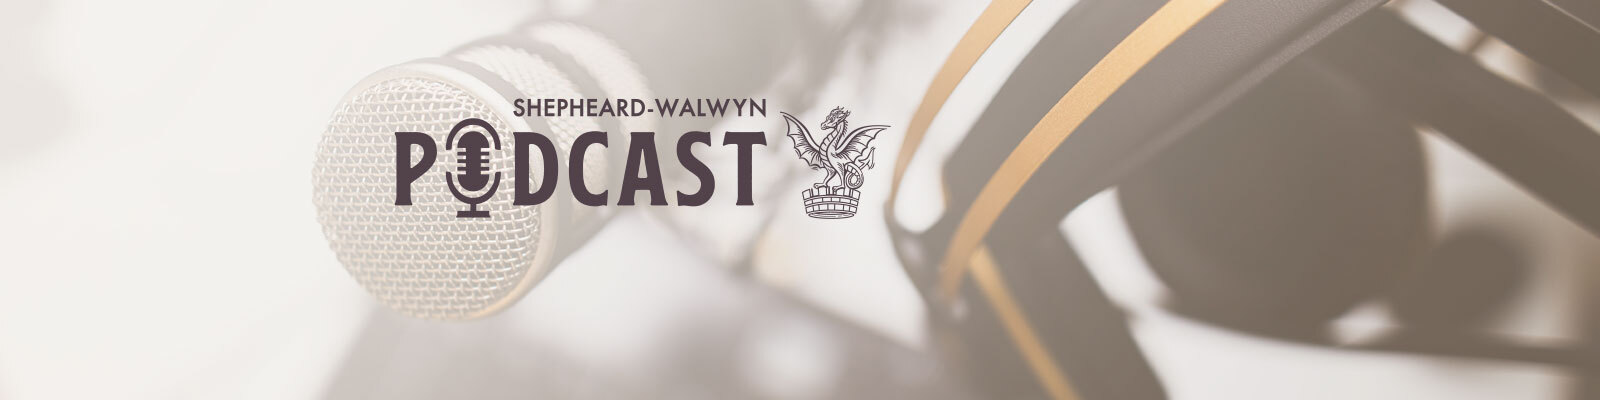 The Shepheard Walwyn Podcast